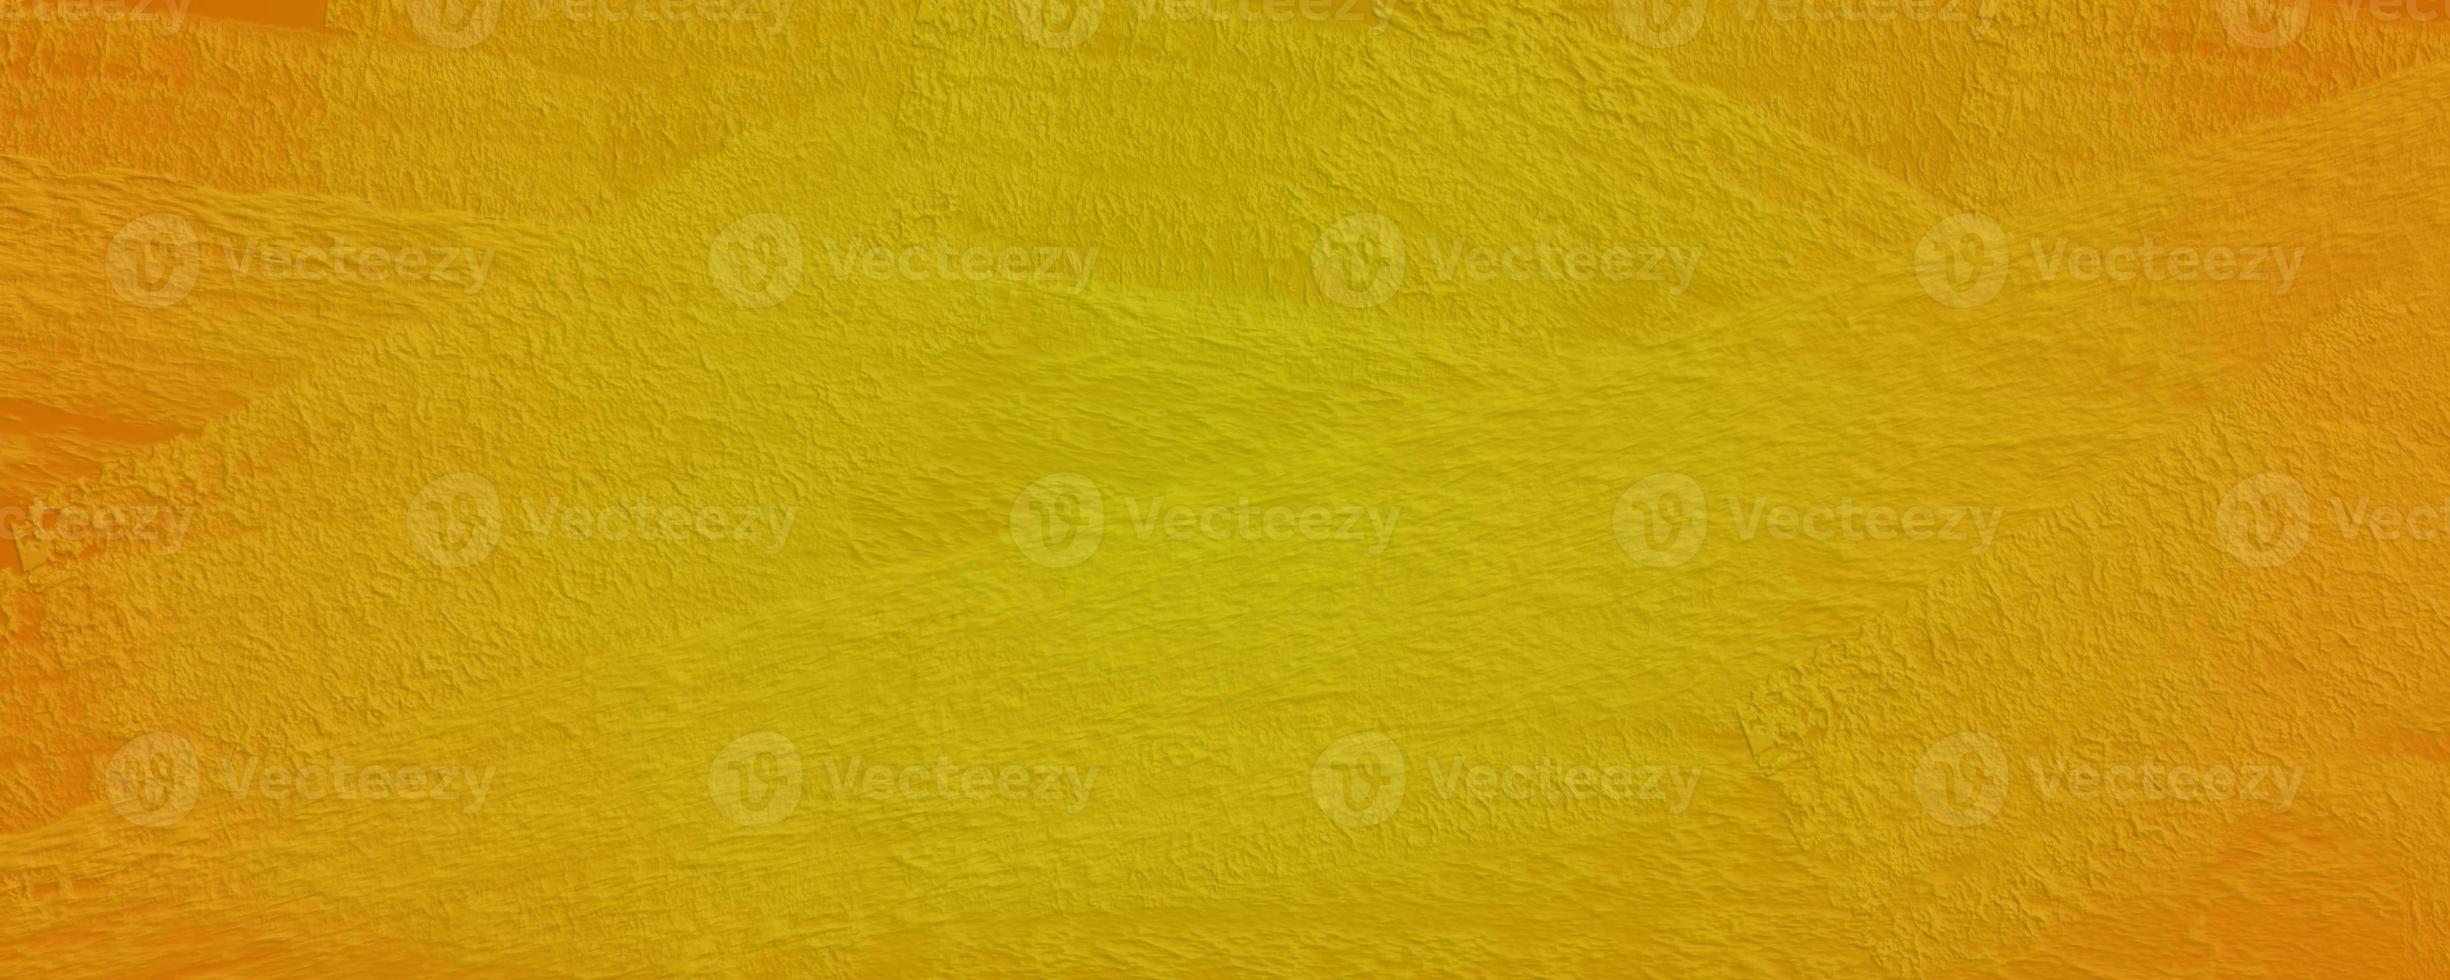 Tapetenbürstenschmerz rau für abstrakten Hintergrund, Logohintergrund, gelbe Farbe foto